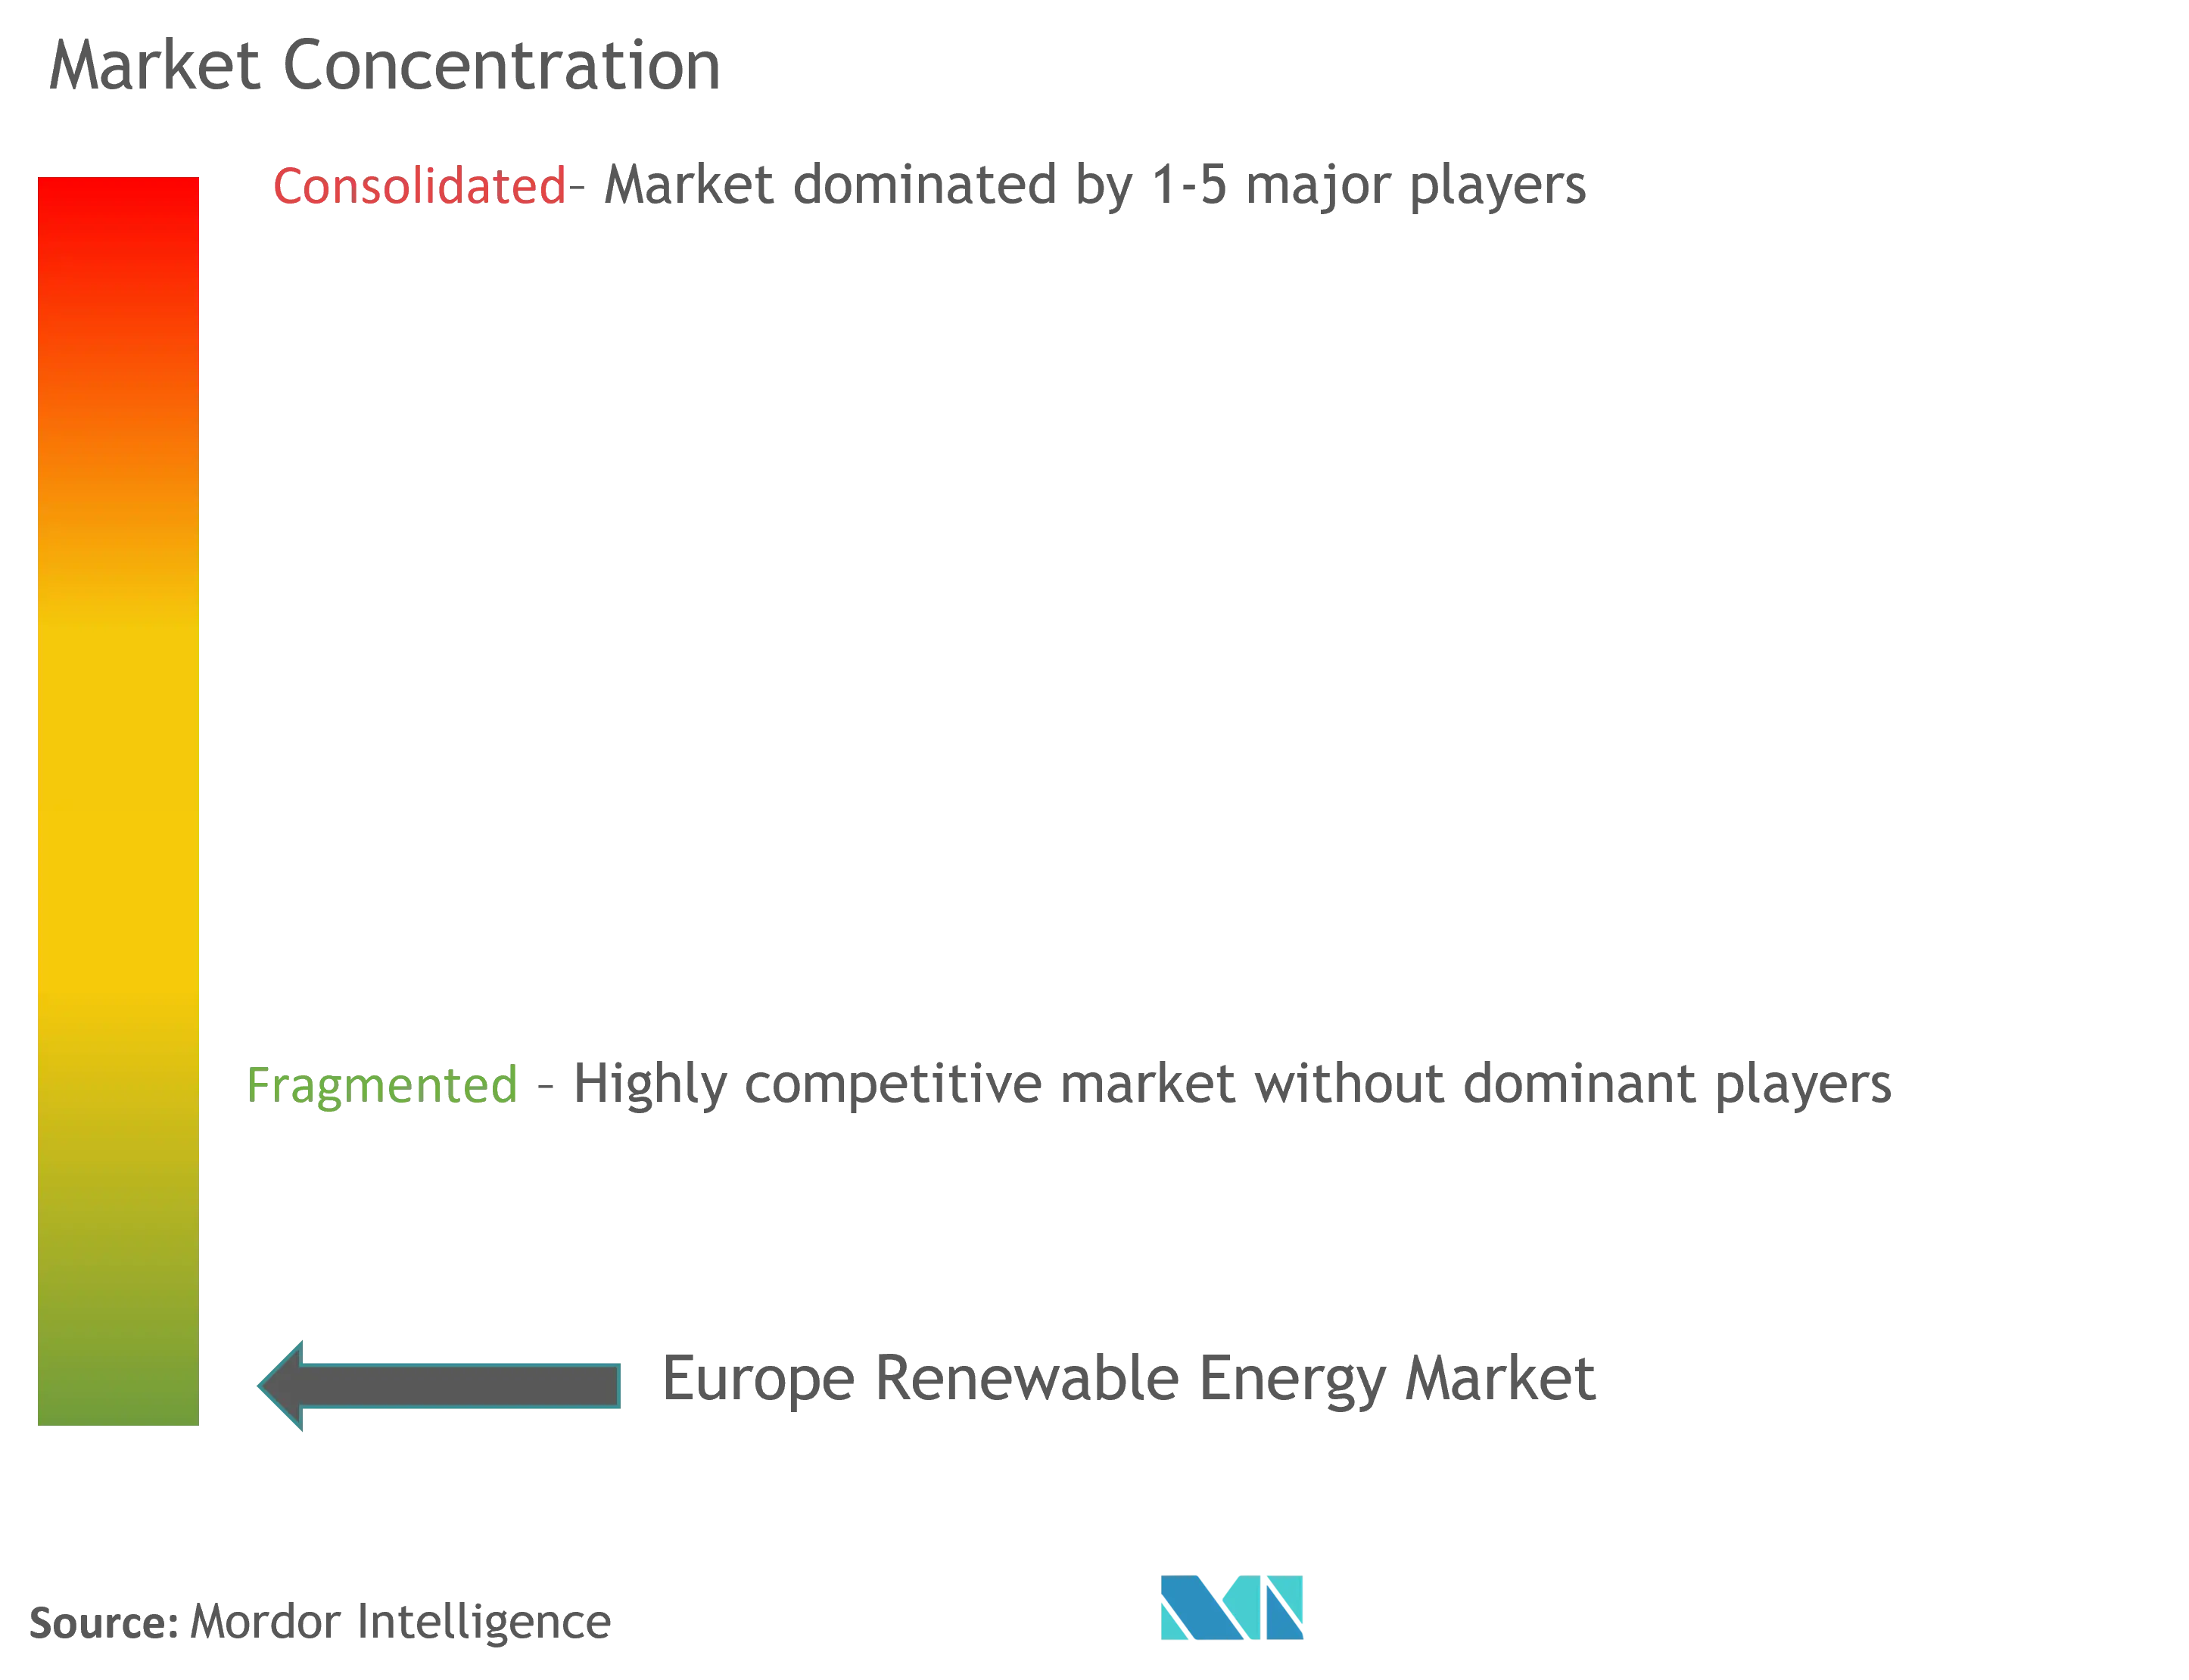 ヨーロッパの再生可能エネルギー市場集中度